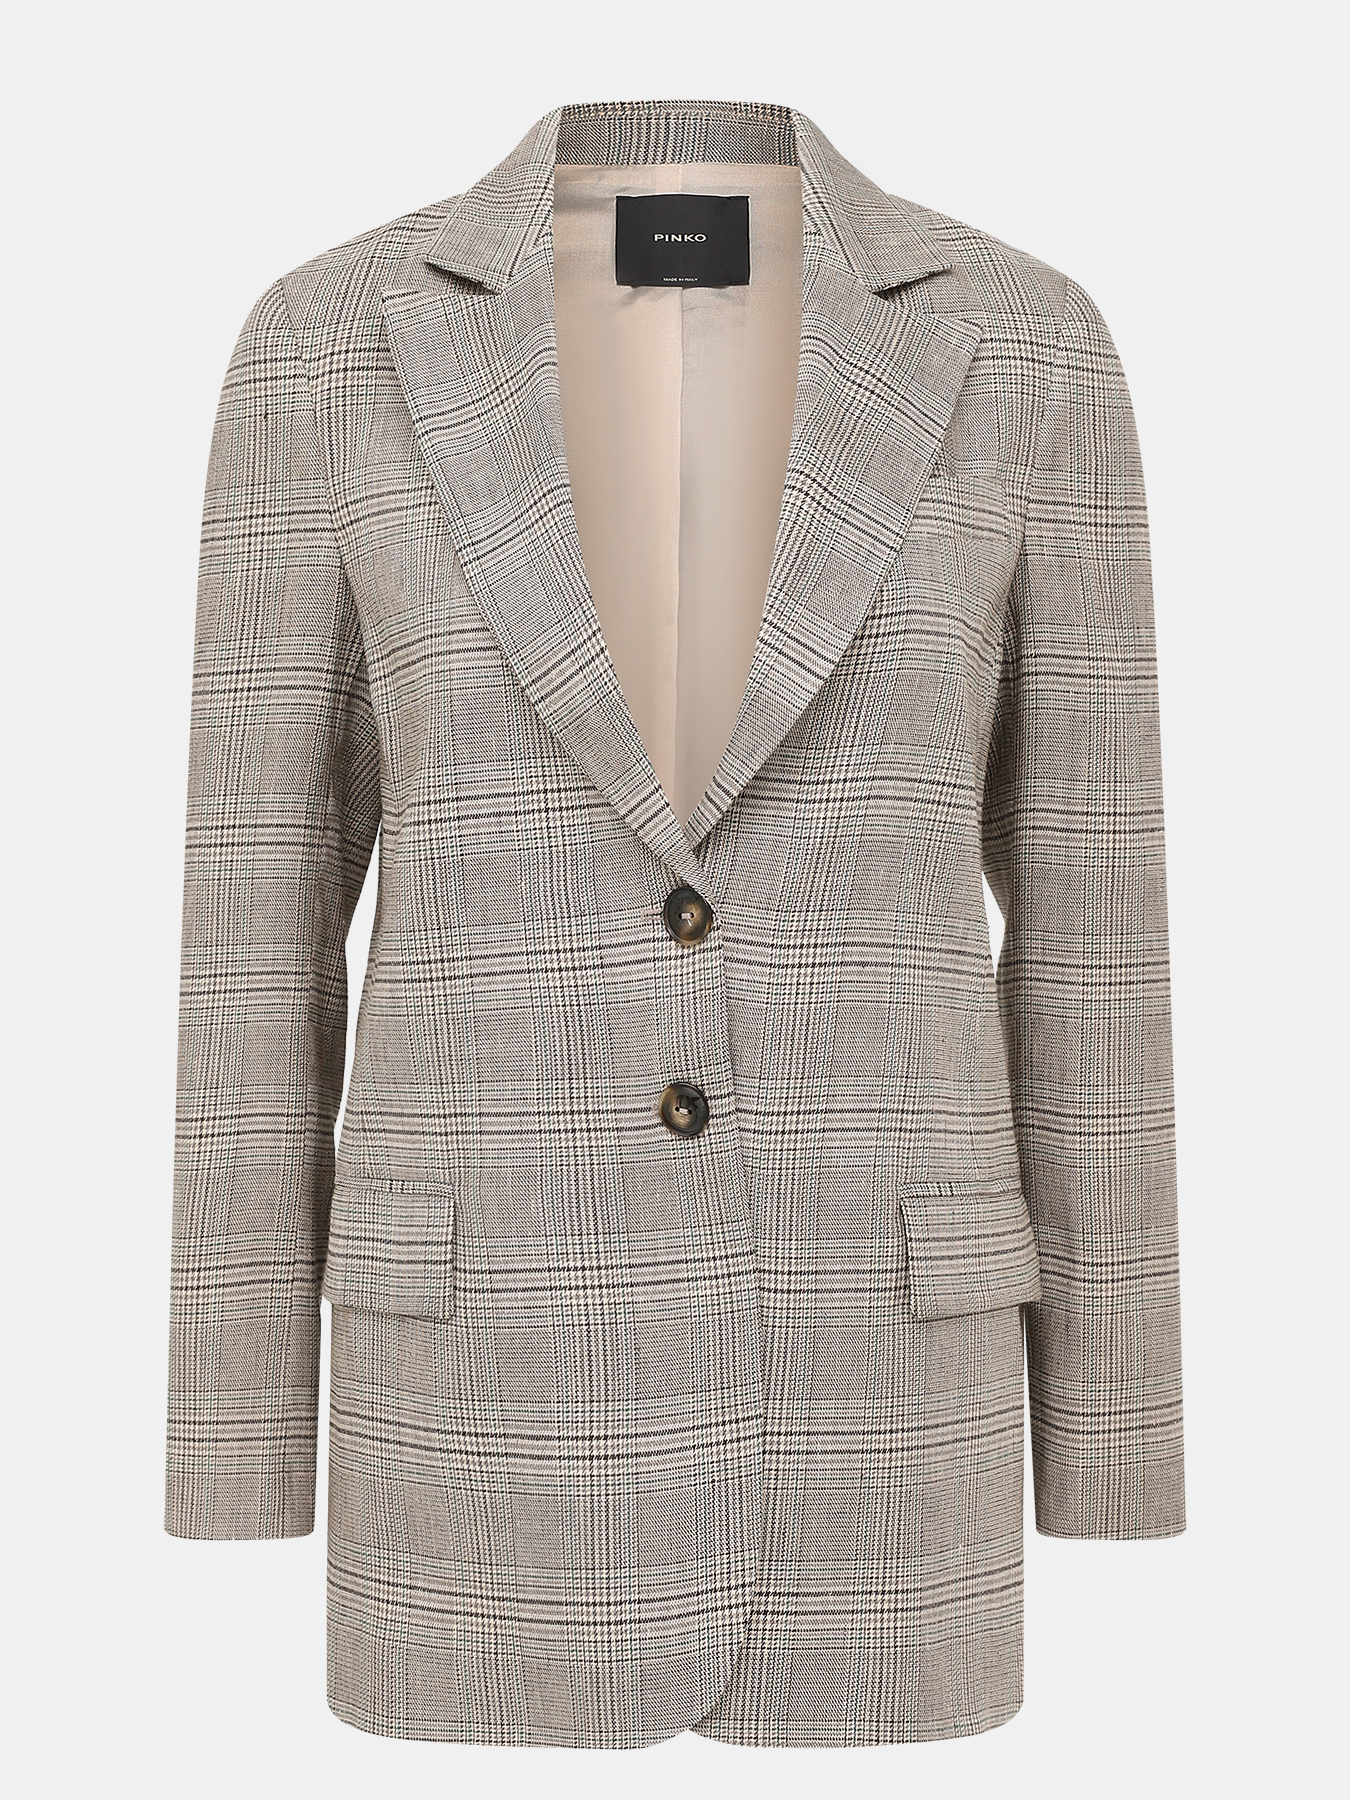 Пиджак Pinko 411641-024, цвет серый, размер 48